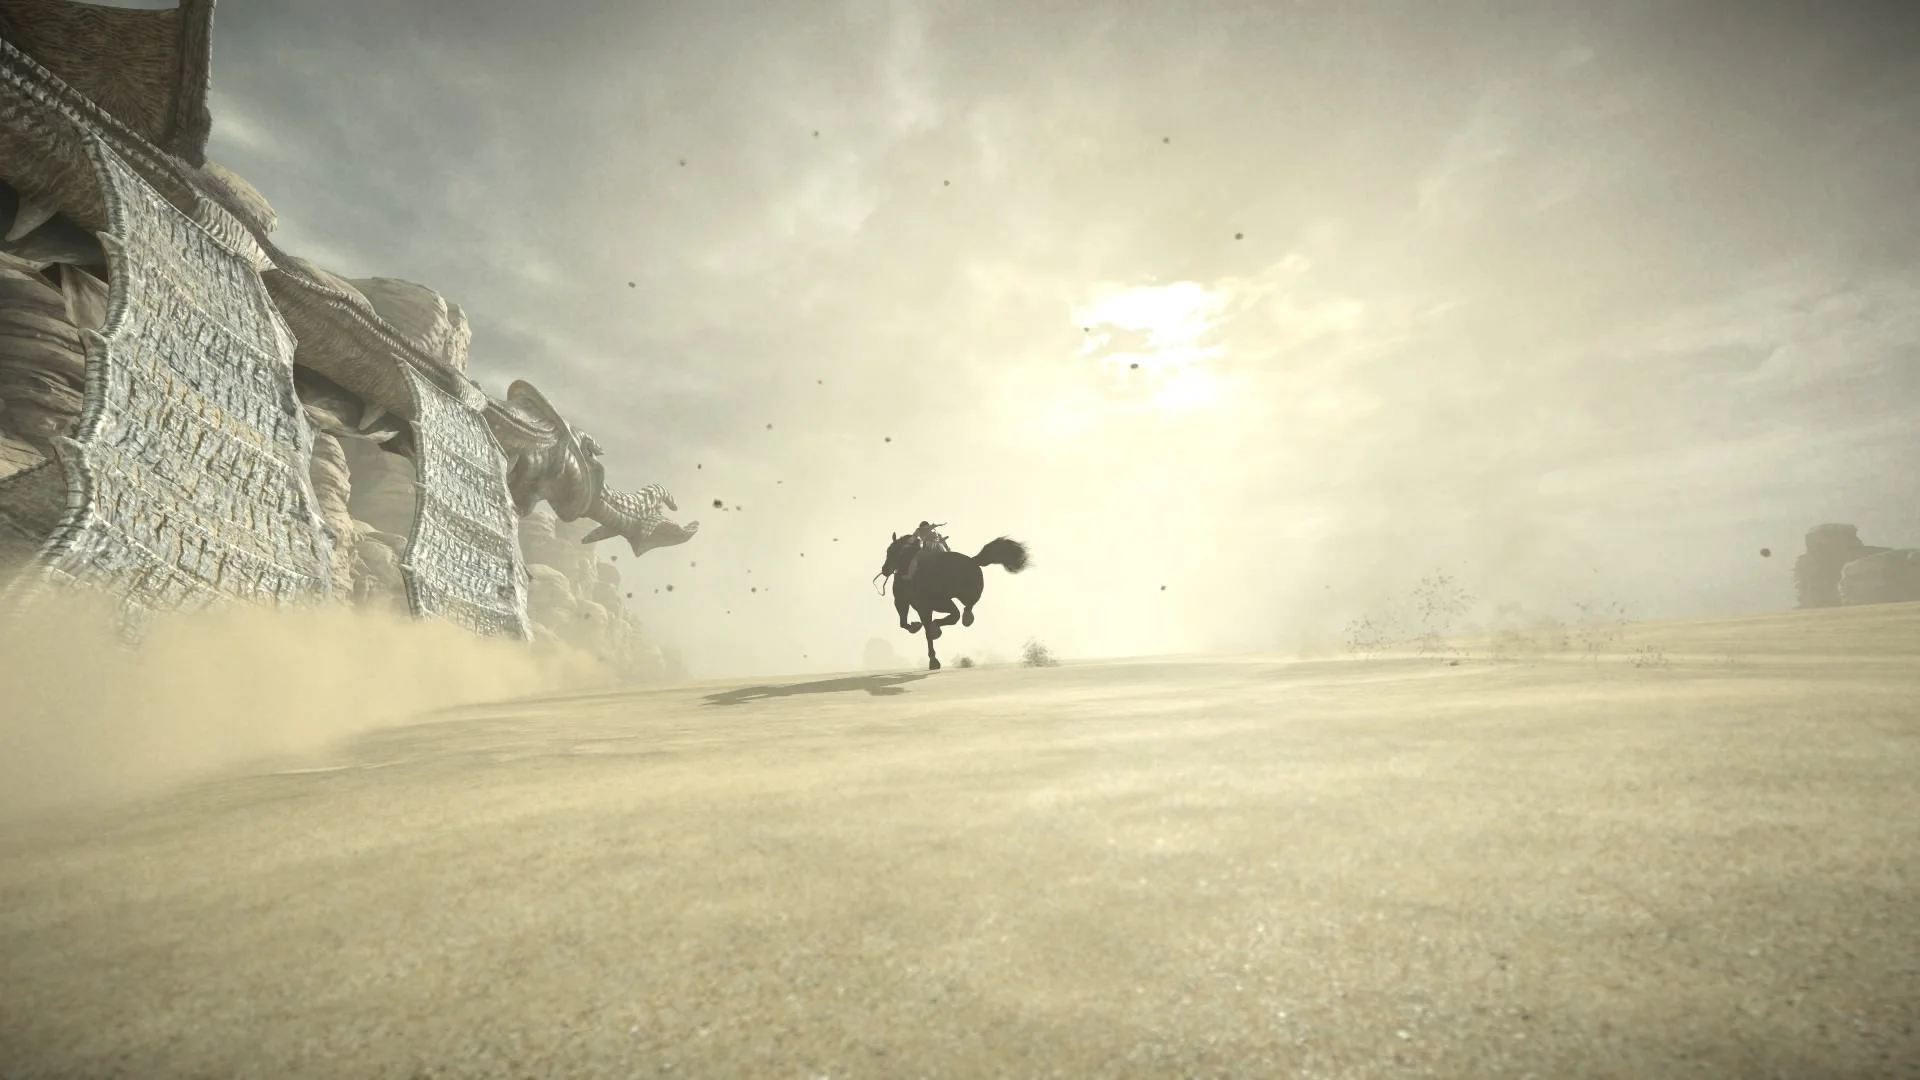 В ремейке Shadow of the Colossus для PS4 появился фоторежим, позволяющий делать великолепные стоп-кадры для подборок вроде этой. Все эти скриншоты сняты на простой PS4 без какой-либо постобработки вне игры! 